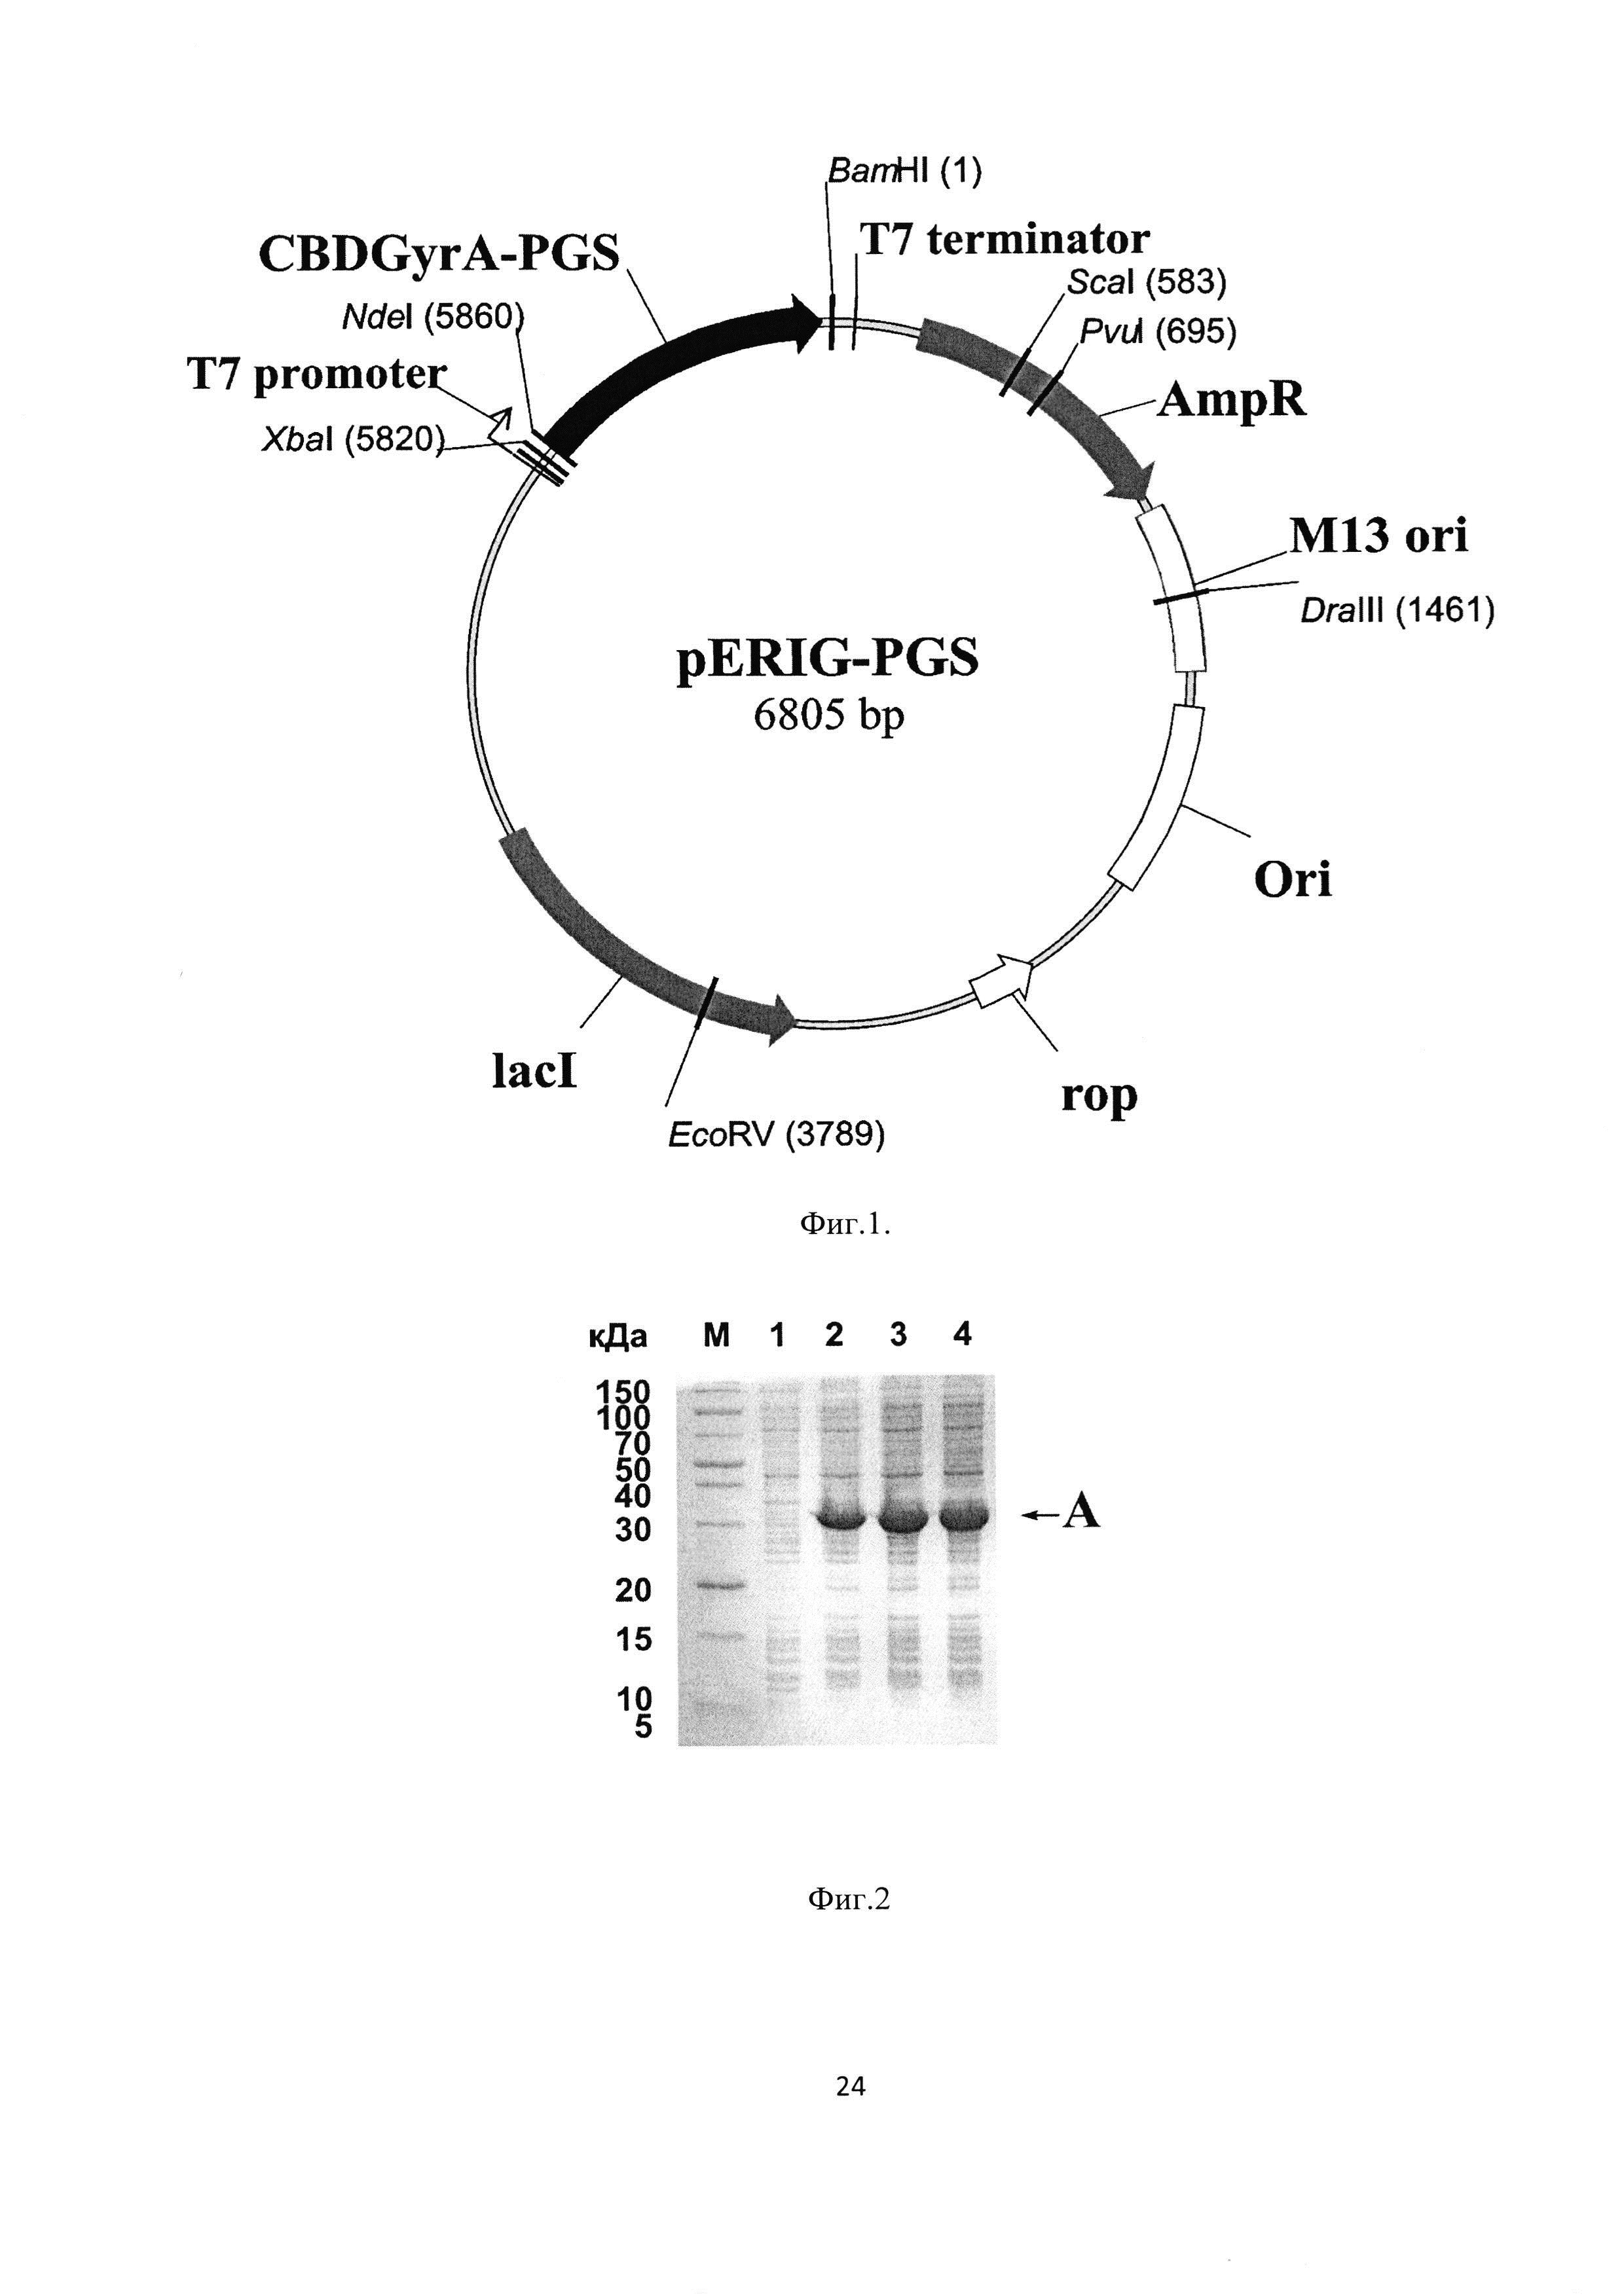 Рекомбинантная плазмидная ДНК pERIG-PGS, кодирующая гибридный белок, способный к автокаталитическому расщеплению с образованием антиангиогенного пептида пигастина - производного фрагмента [44-77] фактора роста пигментного эпителия человека, штамм Escherichia coli BL21(DE3)/pERIG-PGS - продуцент указанного белка, и способ получения рекомбинантного антиангиогенного пептида